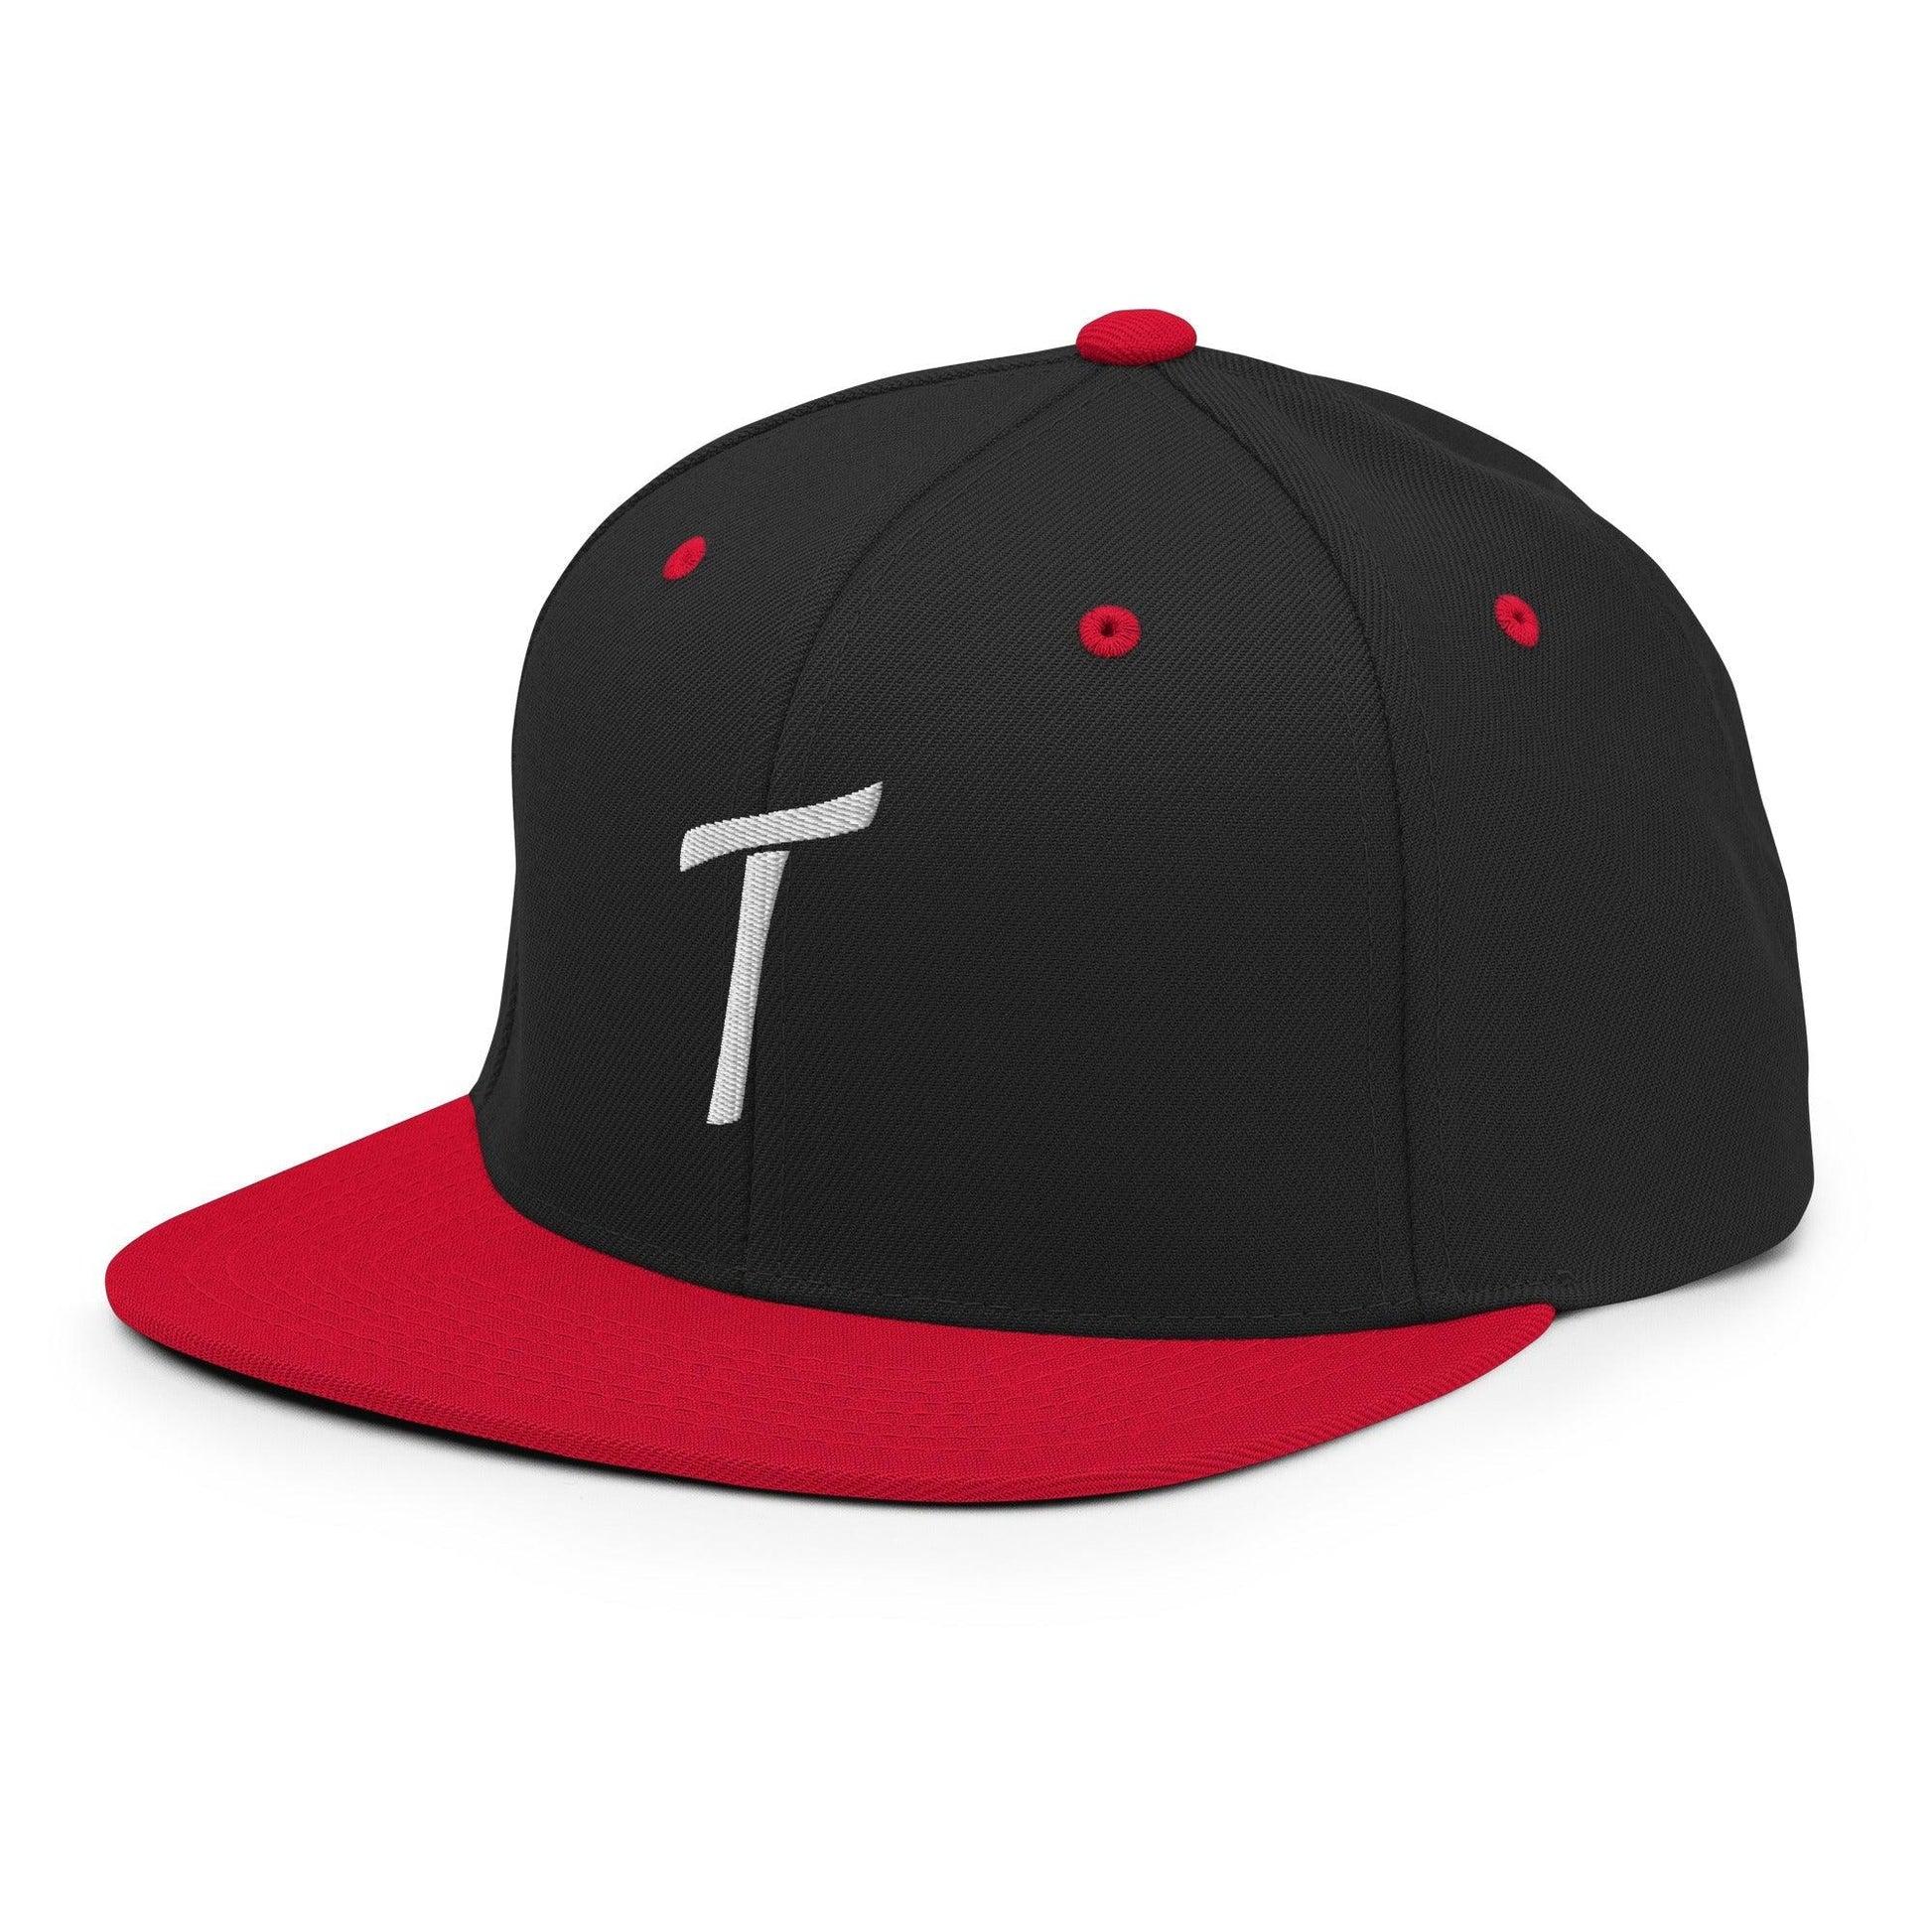 Tulsa Letter T Vintage Sports Script Snapback Hat Black Red